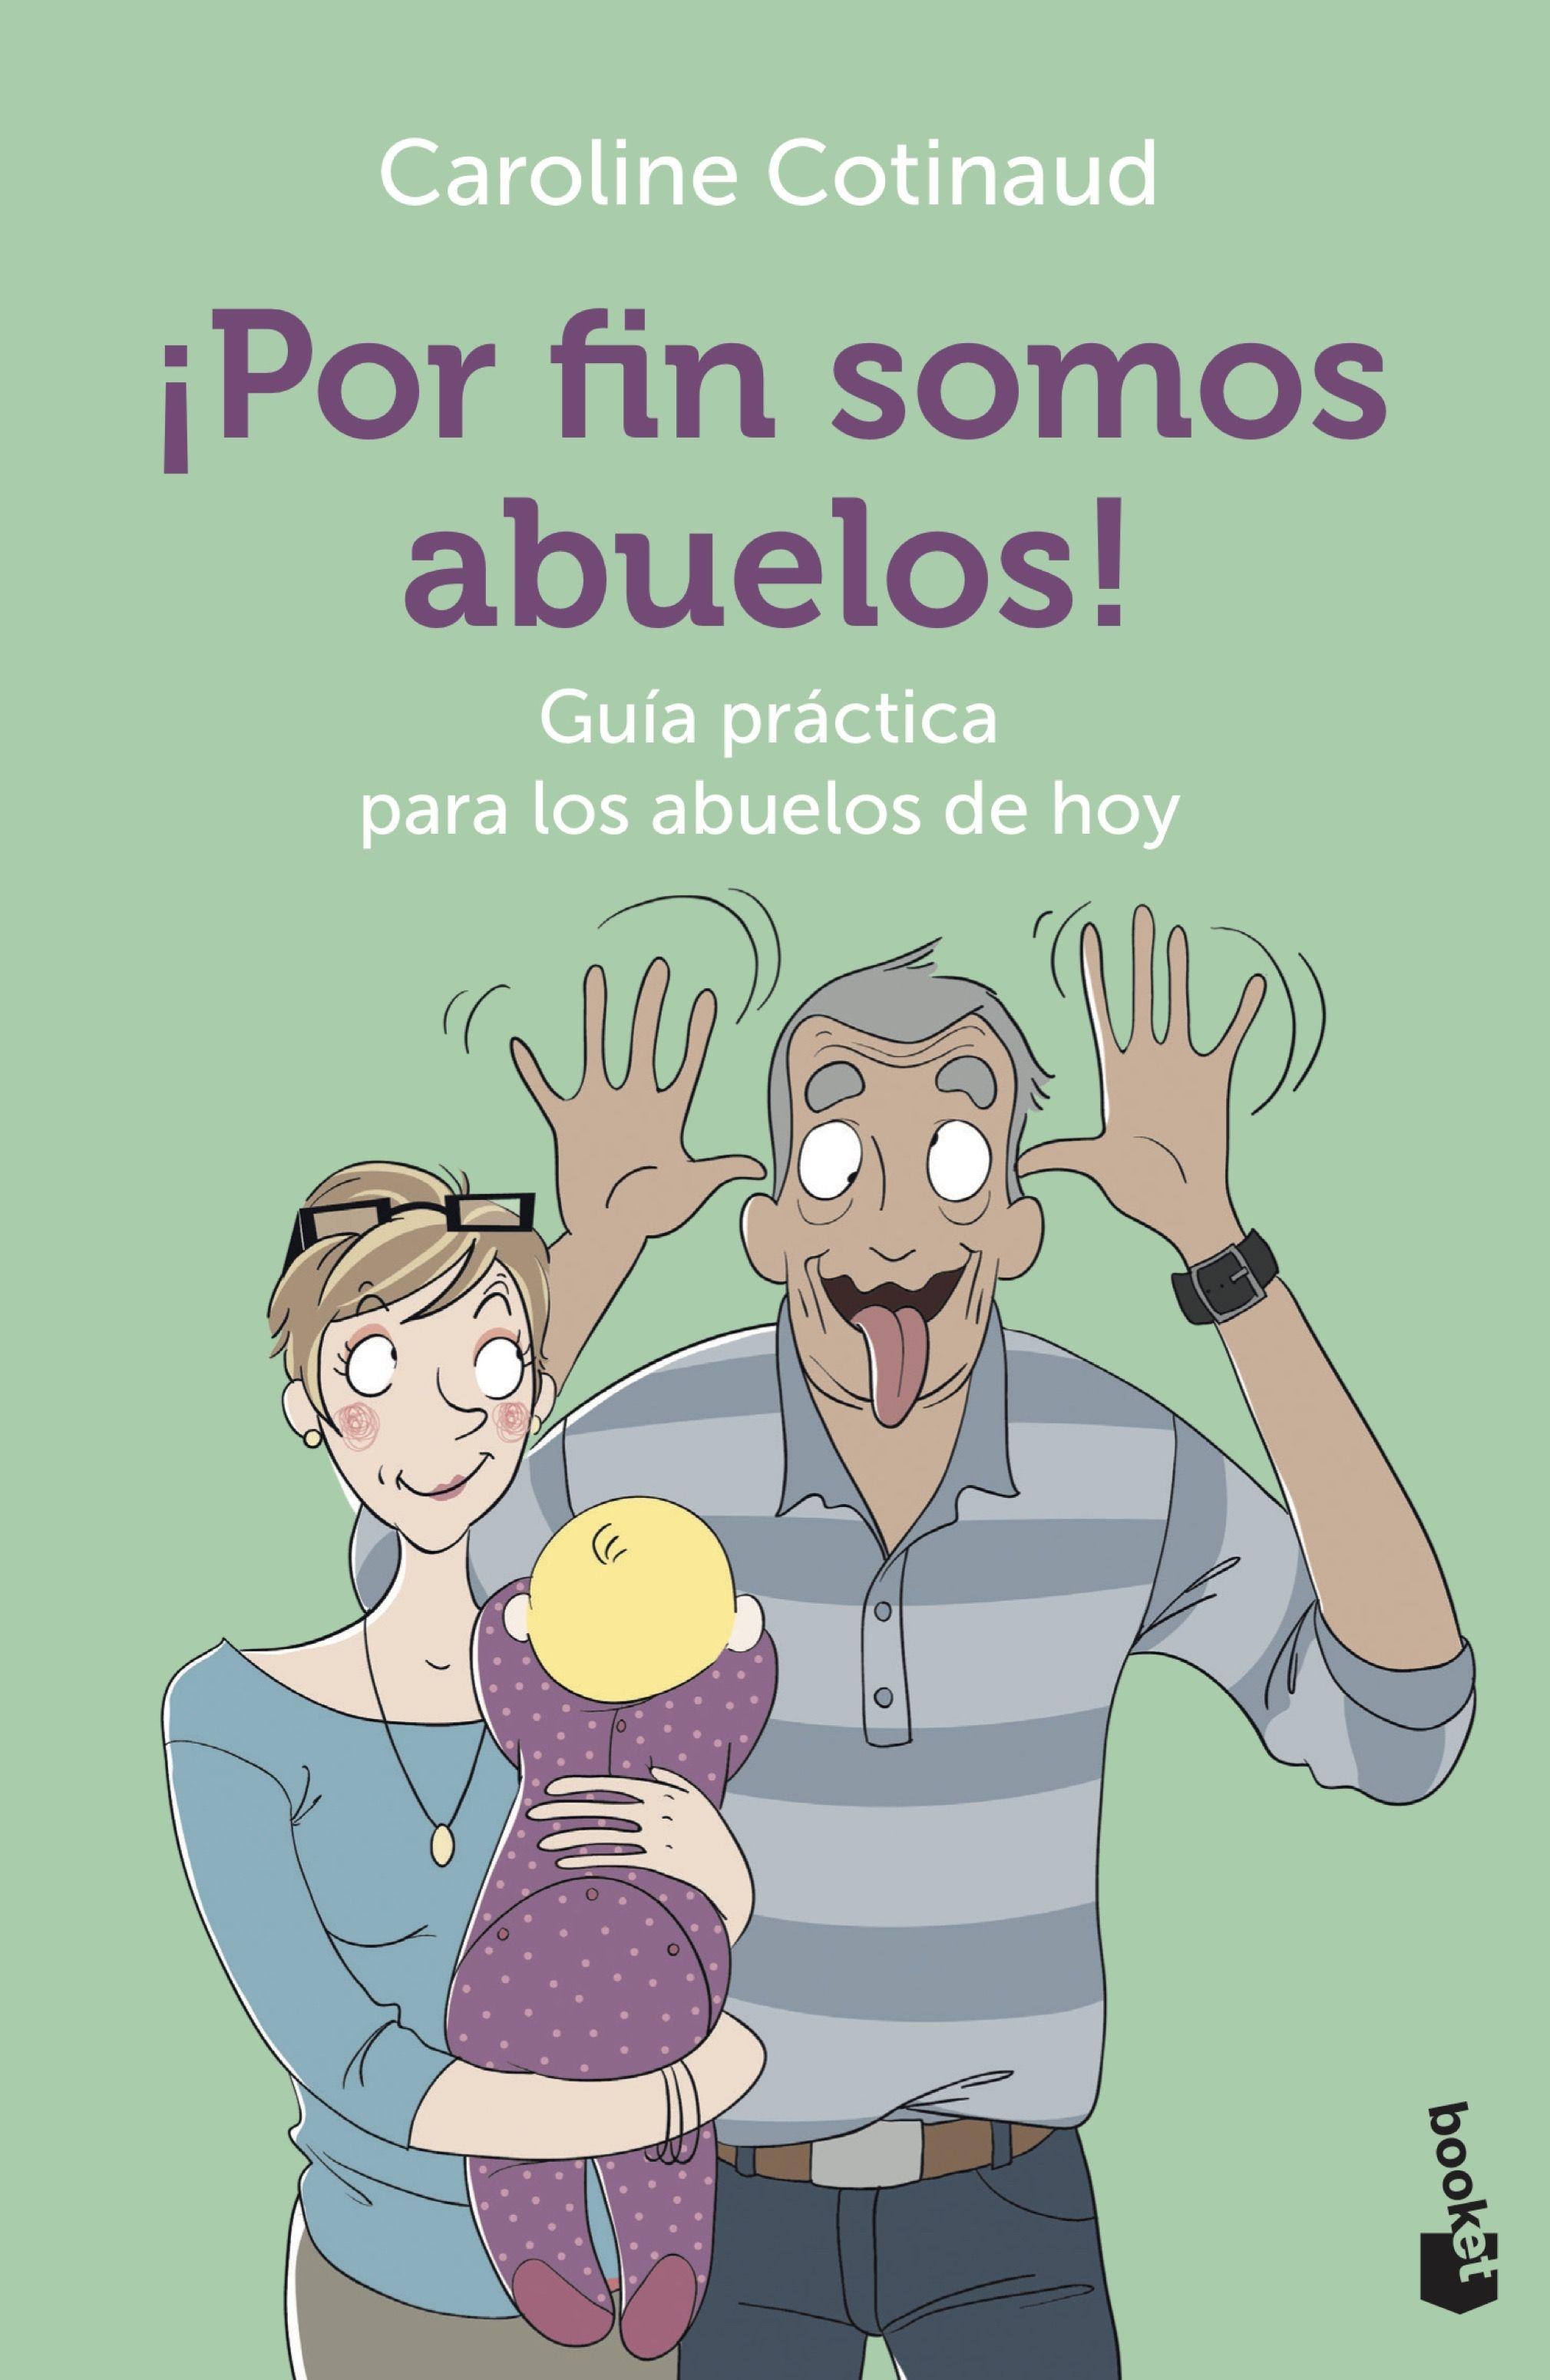 ¡Por fin somos abuelos! "Guía práctica para los abuelos de hoy"